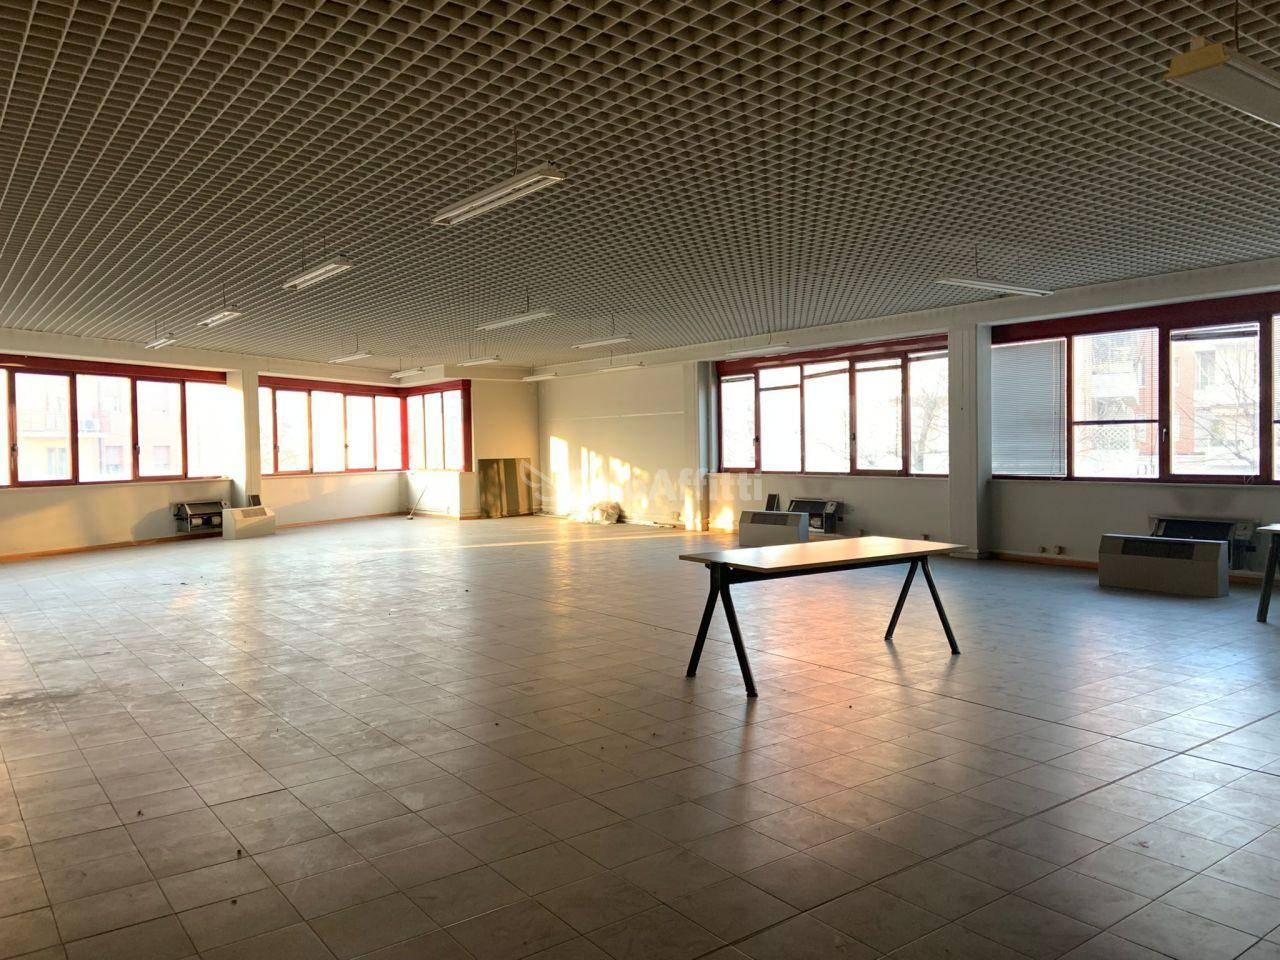 Ufficio condiviso in affitto a Modena